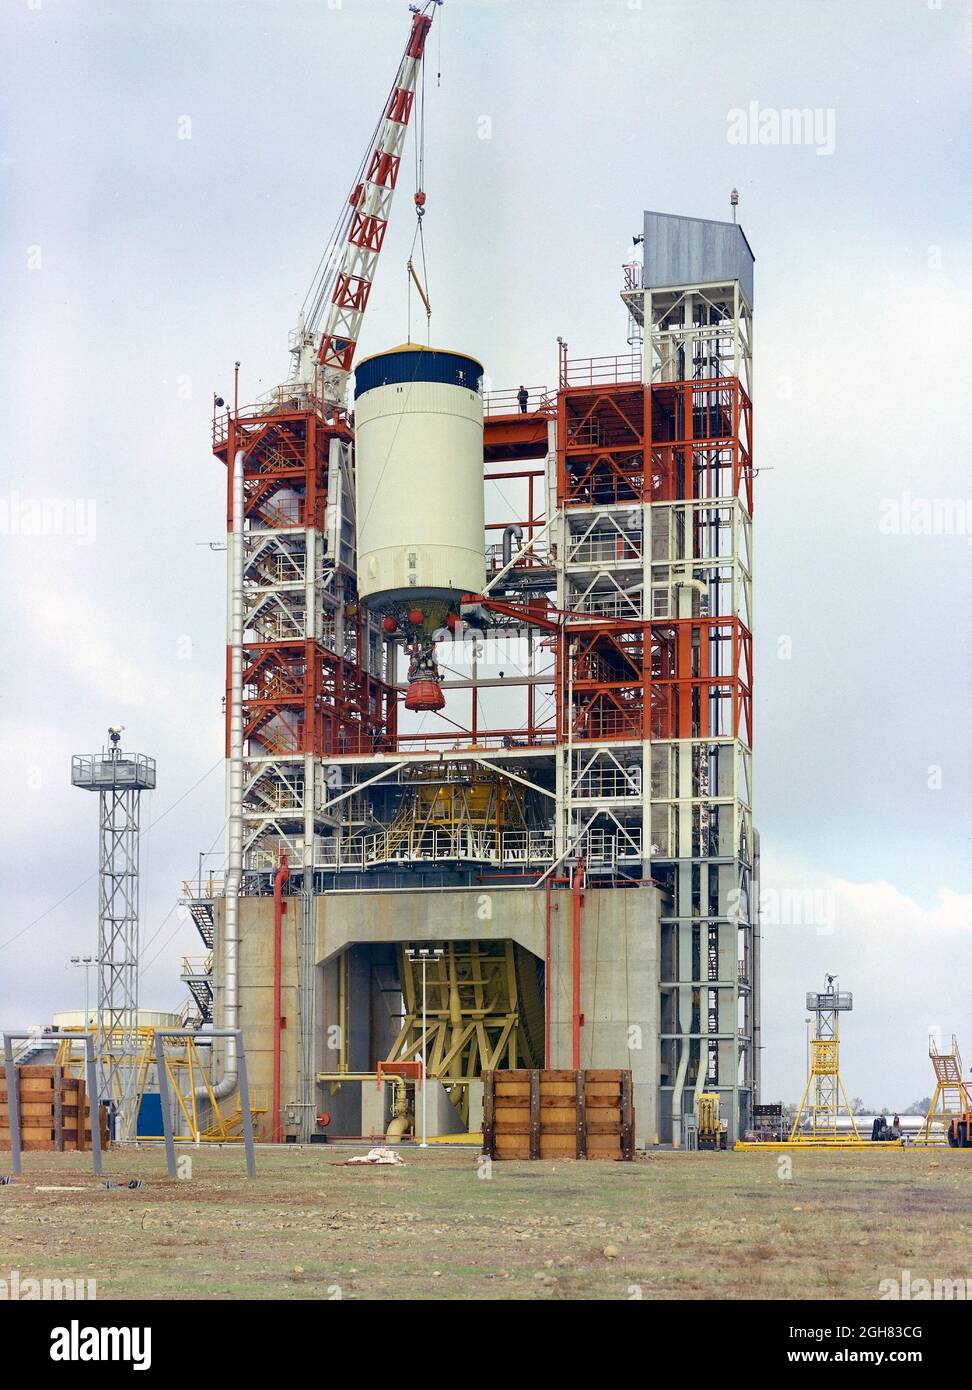 Dieses Bild zeigt die dritte Stufe des Saturn V S-IVB für die Apollo 10-Mission, die nach dem Abnahmetest in der Sacto-Anlage (SACTO) der Douglas Aircraft Company aus dem Beta-Teststand 1 entfernt wurde. Nachdem die S-II (zweite) Stufe abgefallen war, wurde die S-IVB (dritte) Stufe gezündet und etwa zwei Minuten lang verbrannt, um sich und die Apollo-Sonde in die gewünschte Erdumlaufbahn zu bringen. Zur richtigen Zeit während dieser Parklaufbahn wurde die S-IVB-Stufe erneut entzündet, um die Apollo-Sonde zu beschleunigen, um der Geschwindigkeit zu entgehen, der sie und die Astronauten in eine Mondbahn injiziert wurden. De Stockfoto